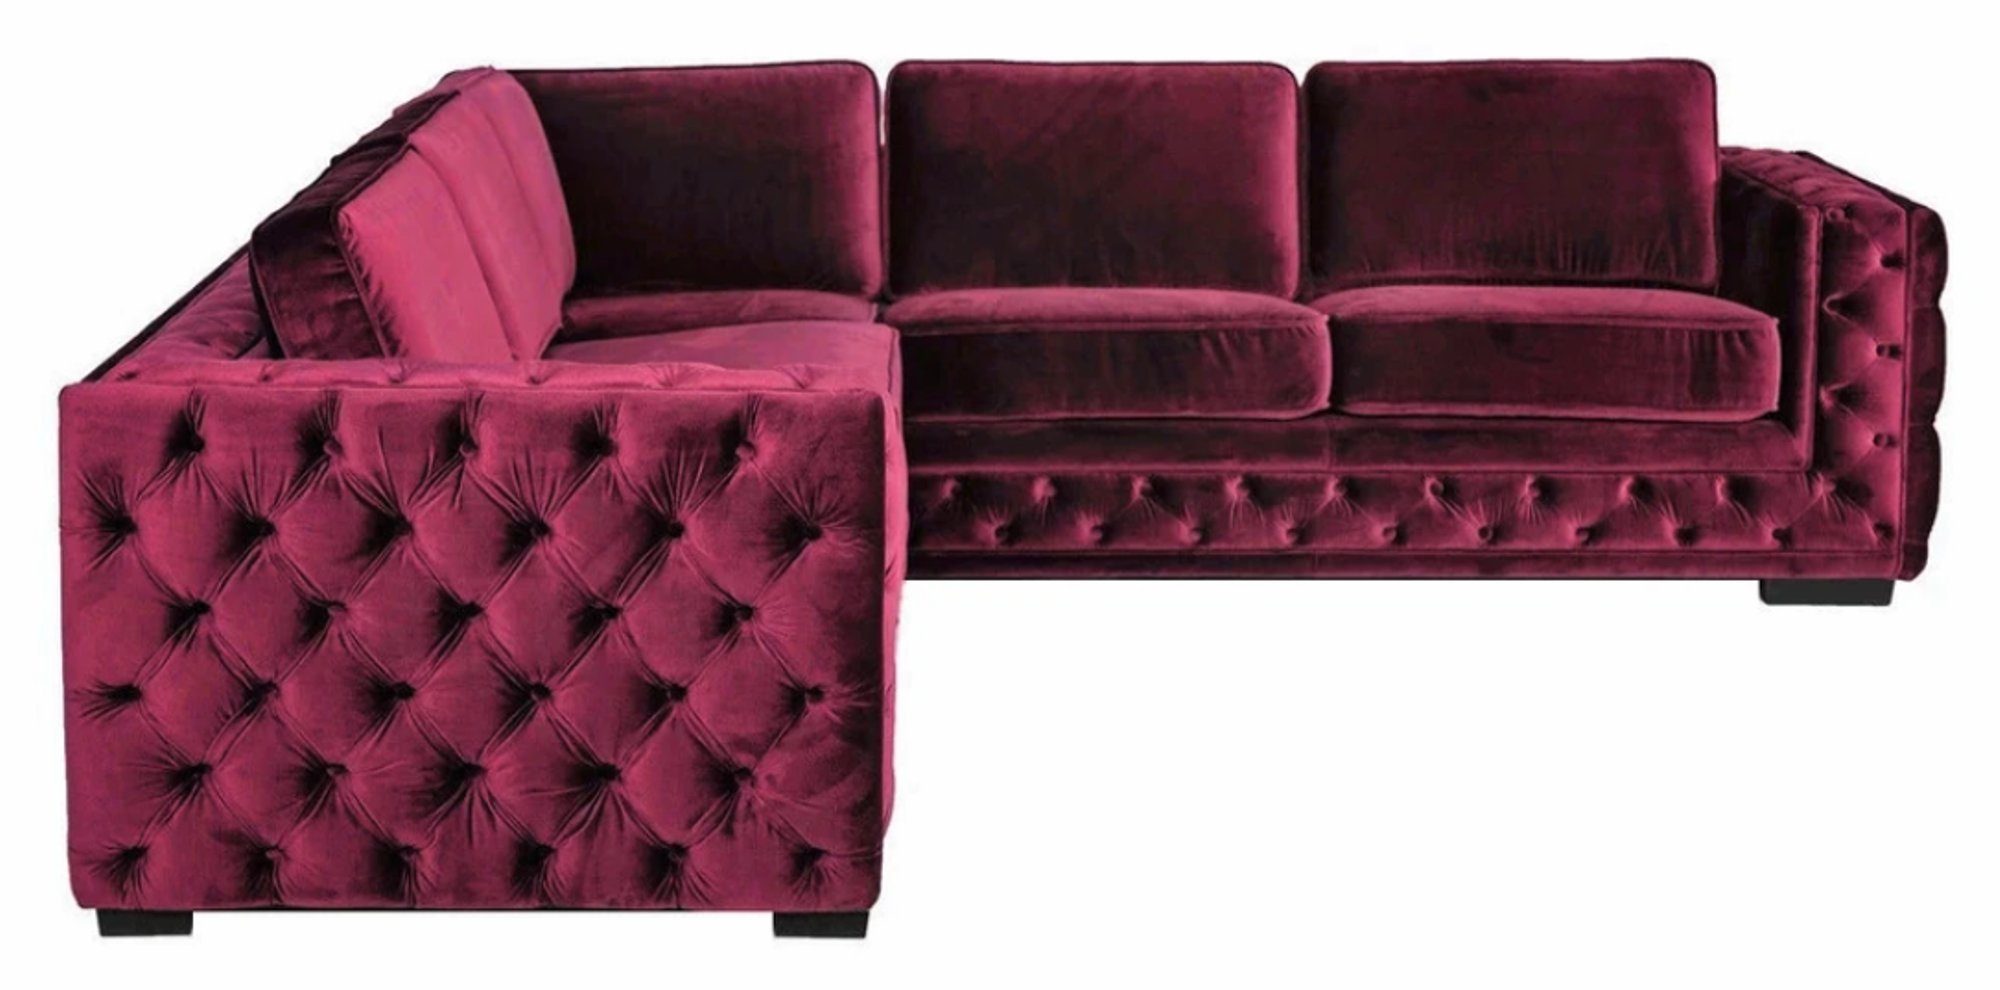 JVmoebel Ecksofa, Lila chesterfield couch luxus samt stoff couchen sofa set knöpfe | Ecksofas